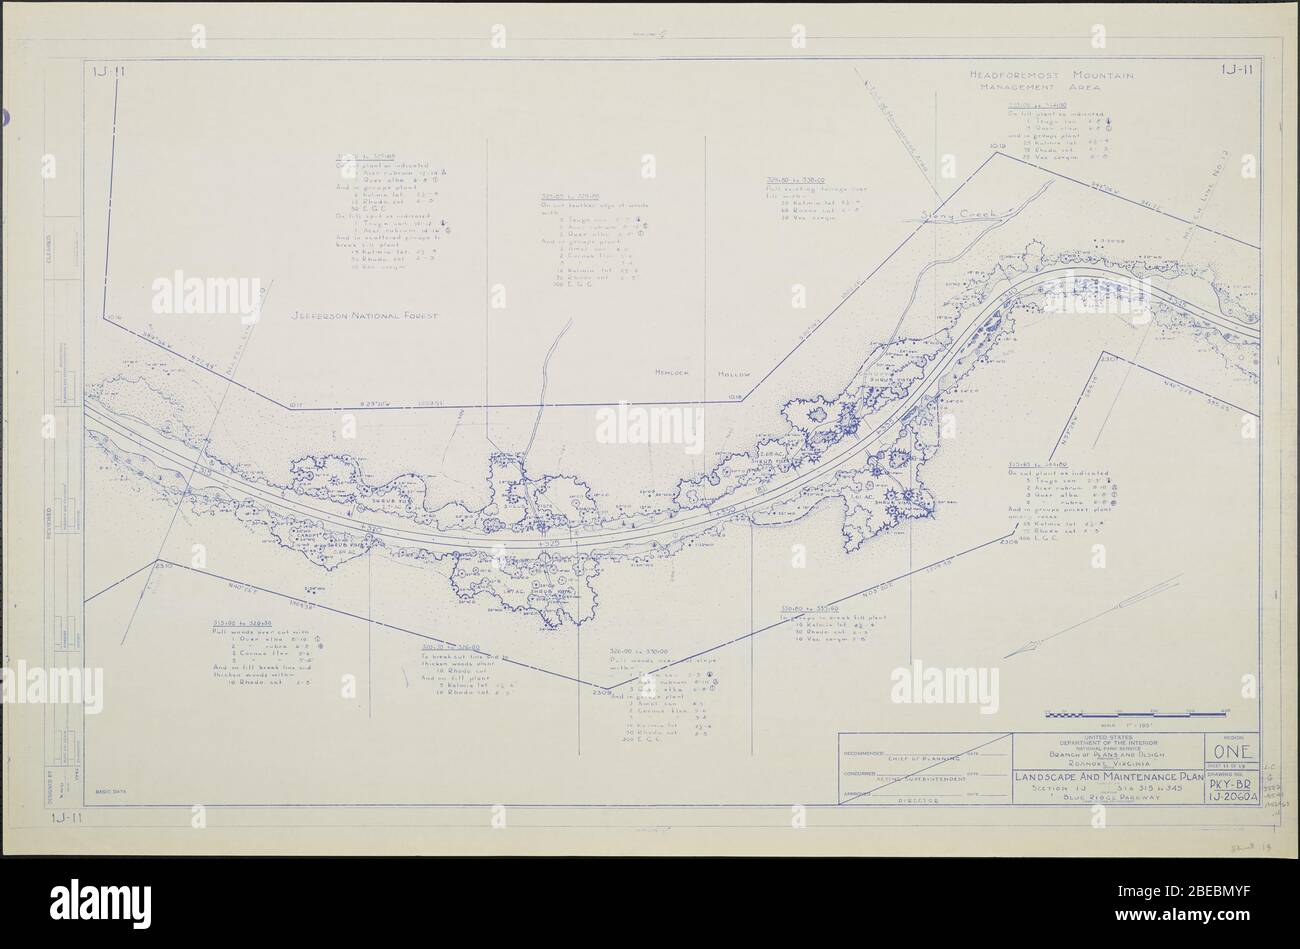 'Blue Ridge Parkway, Regione 1 foglio 11; una mappa della Blue Ridge Parkway con dettagli su alberi, arbusti e piantine nelle vicinanze. Include Stony Creek, Hemlock Hollow, Headforest Mountain Management Area e Jefferson National Forest. Disegno N. 1J-11. Scala 1=100'.; 1942date QS:P571,+1942-00-00T00:00:00Z/9; ' Foto Stock